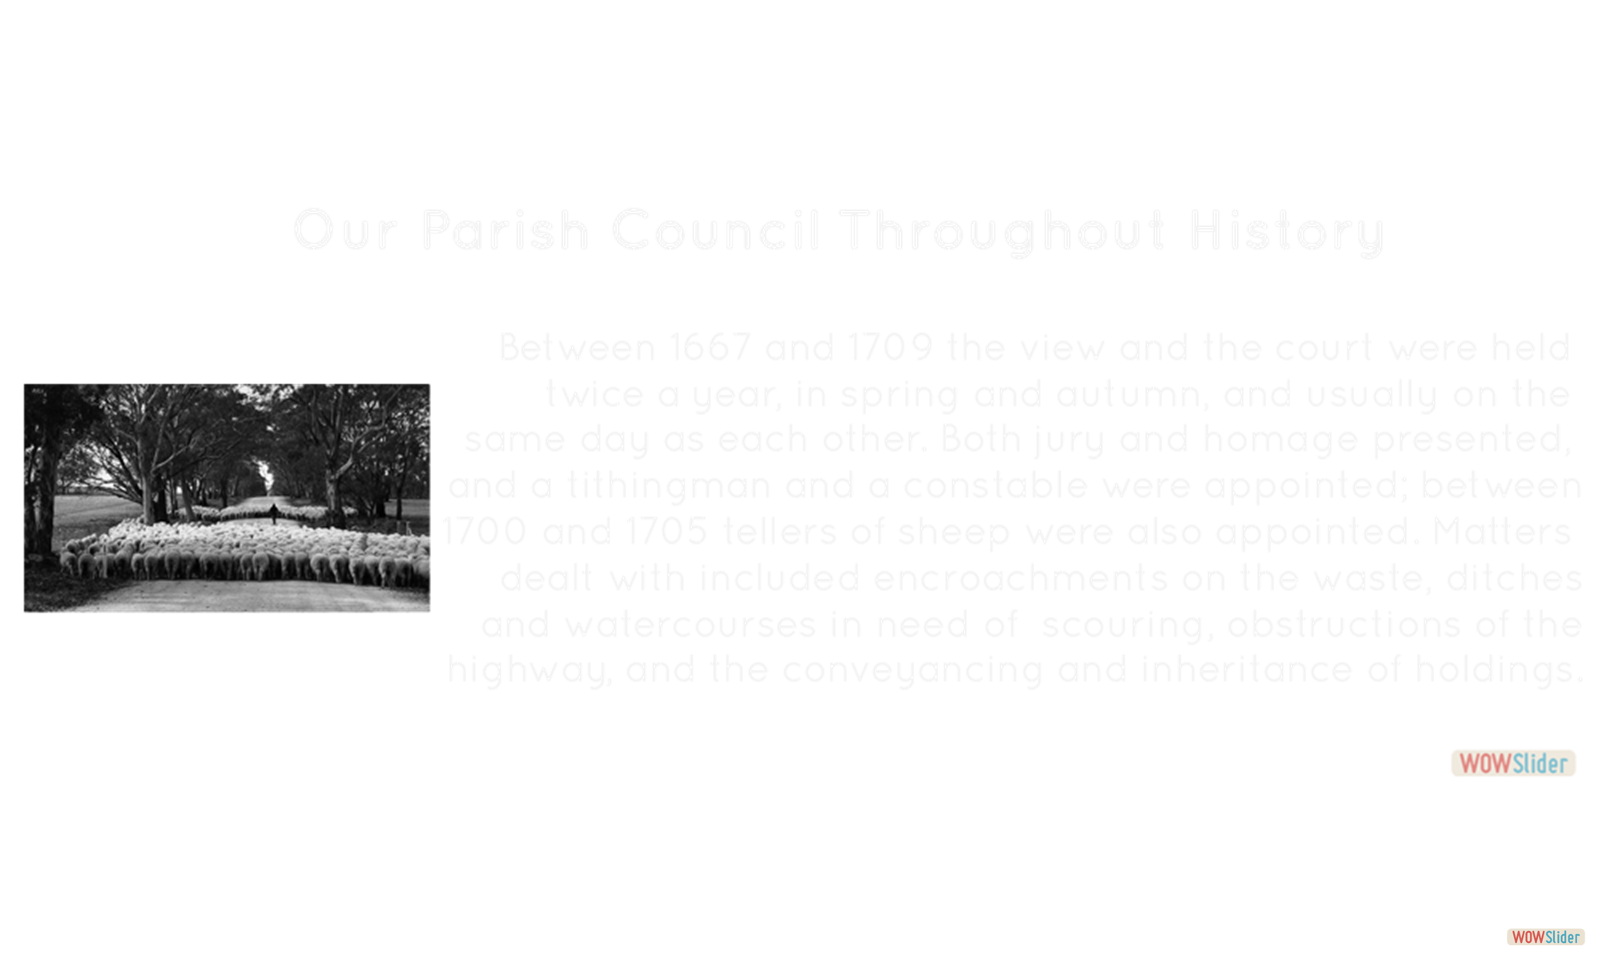 A Parish Council born